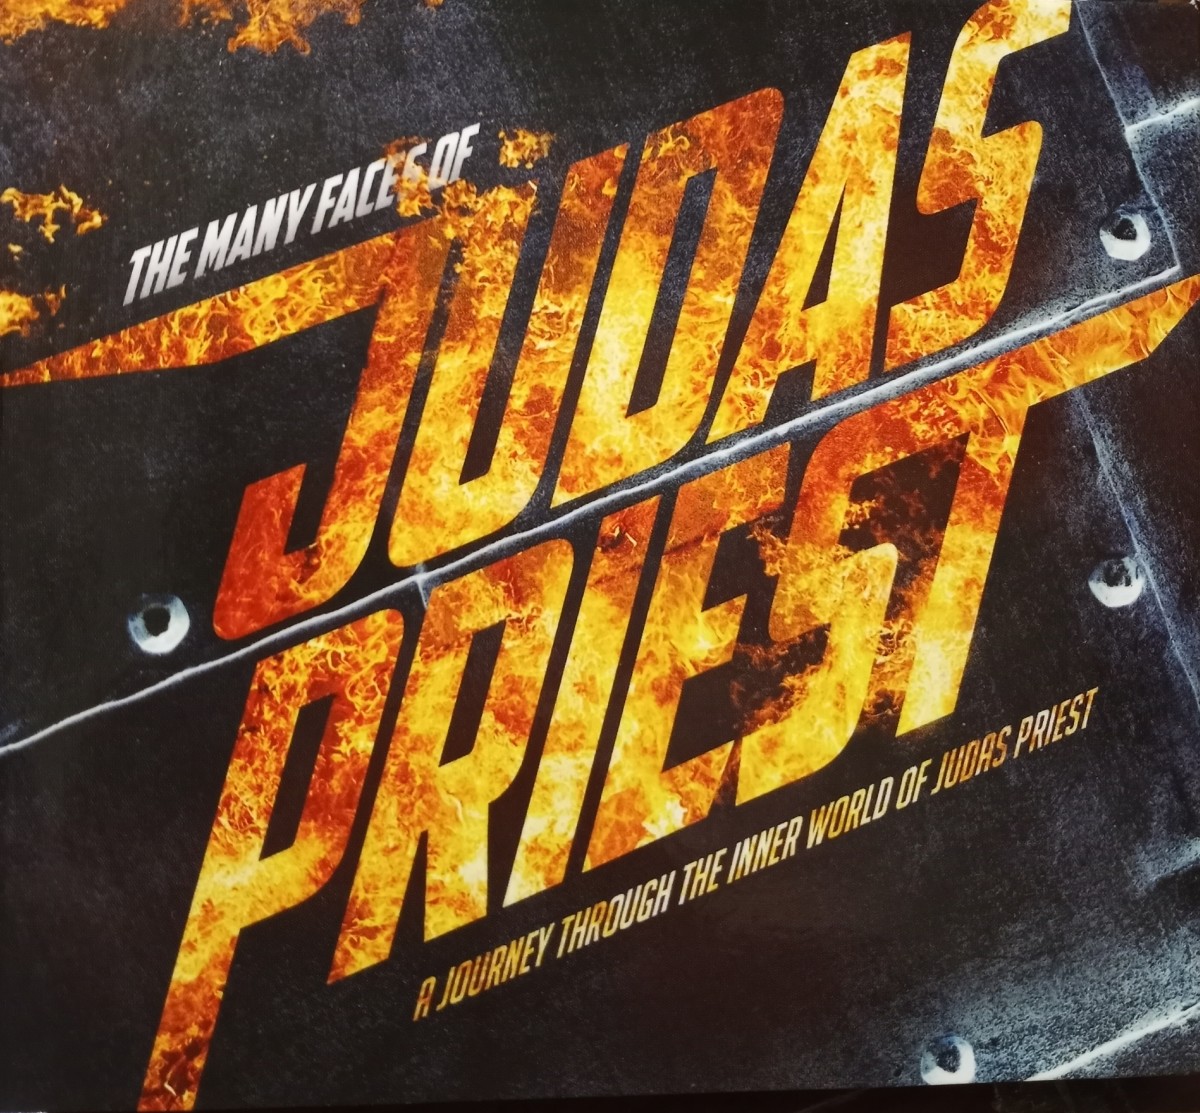 the-many-faces-of-judas-priest-album-review